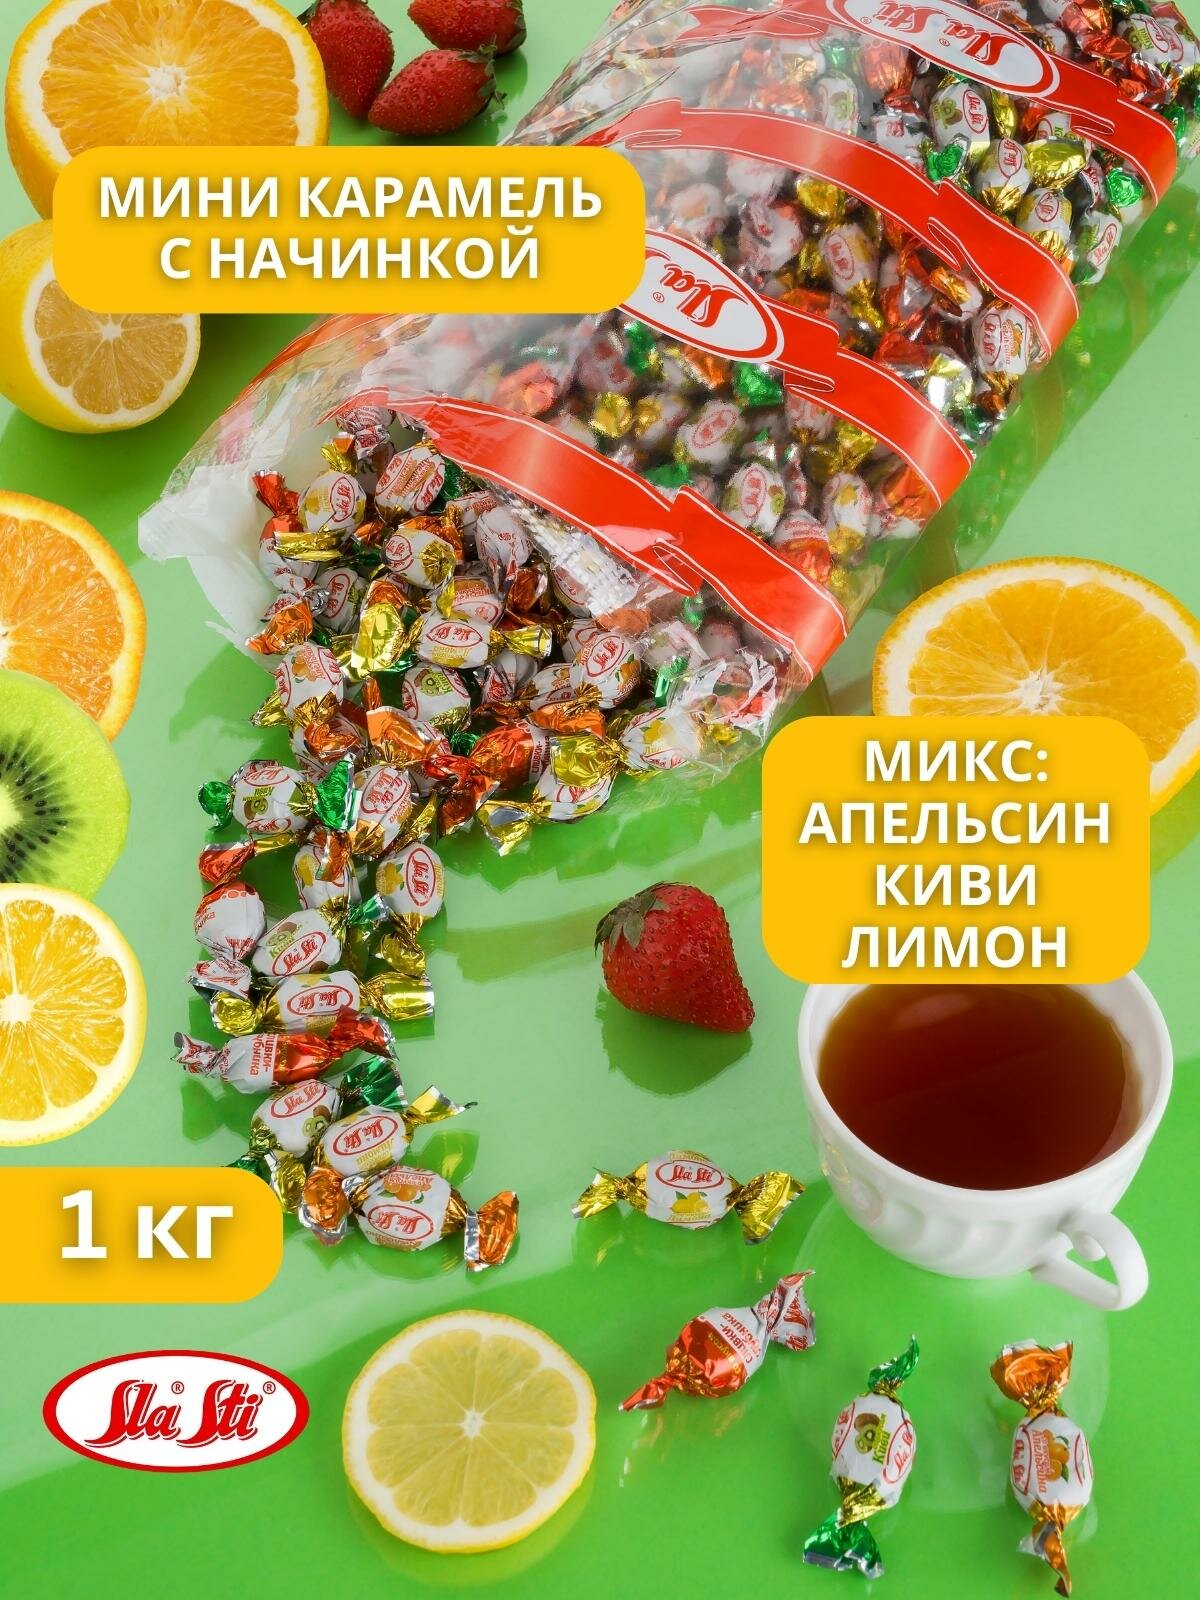 Карамель Мини SlaSti с фруктовой начинкой микс со вкусом апельсин, лимон, киви, 1кг